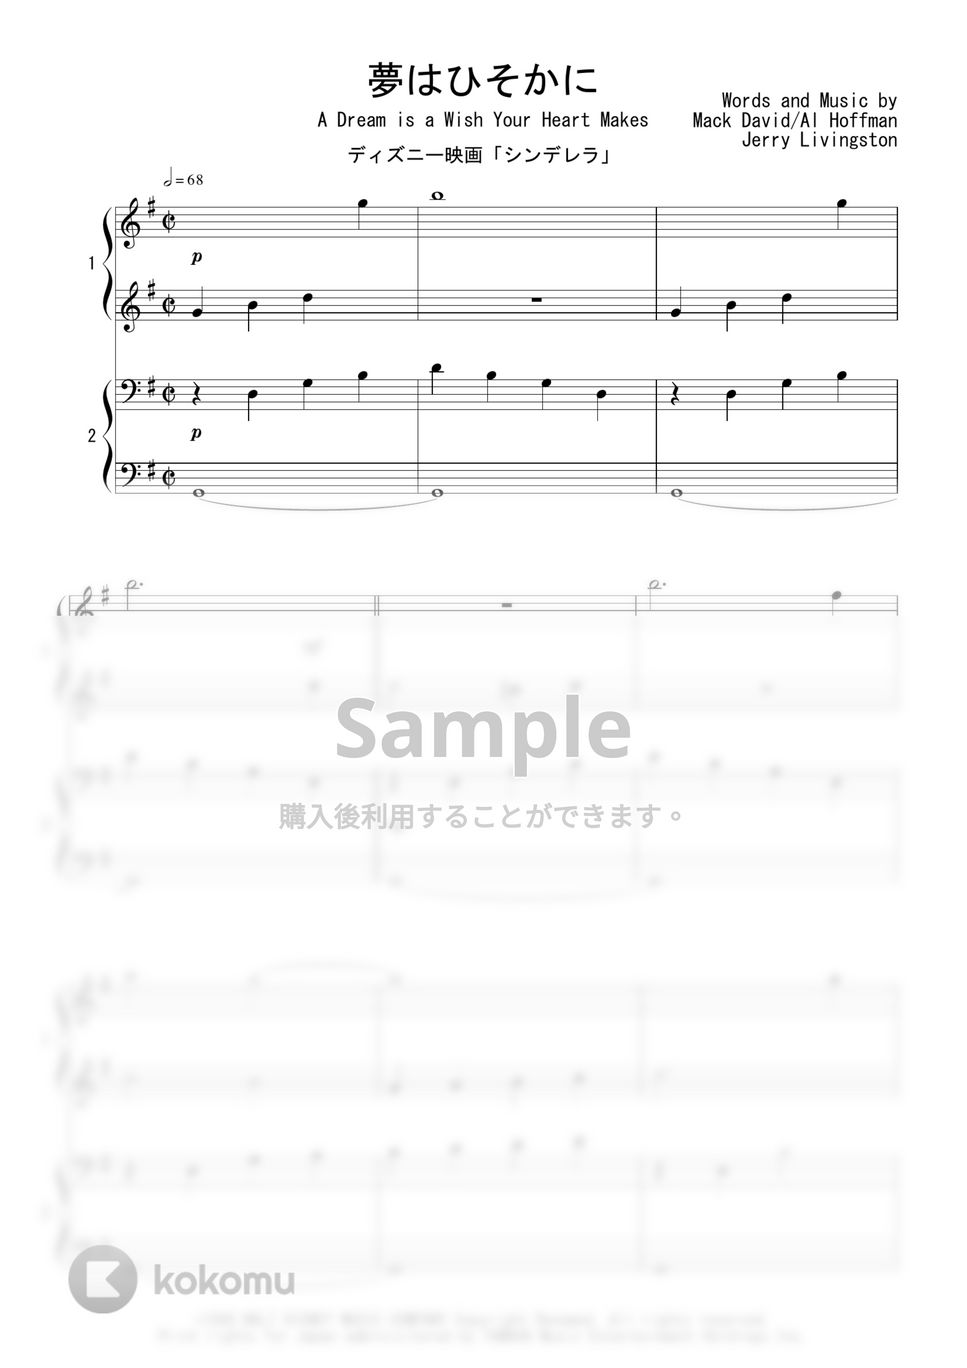 ディズニー映画「シンデレラ」 - 夢はひそかに (ピアノ連弾) by Peony